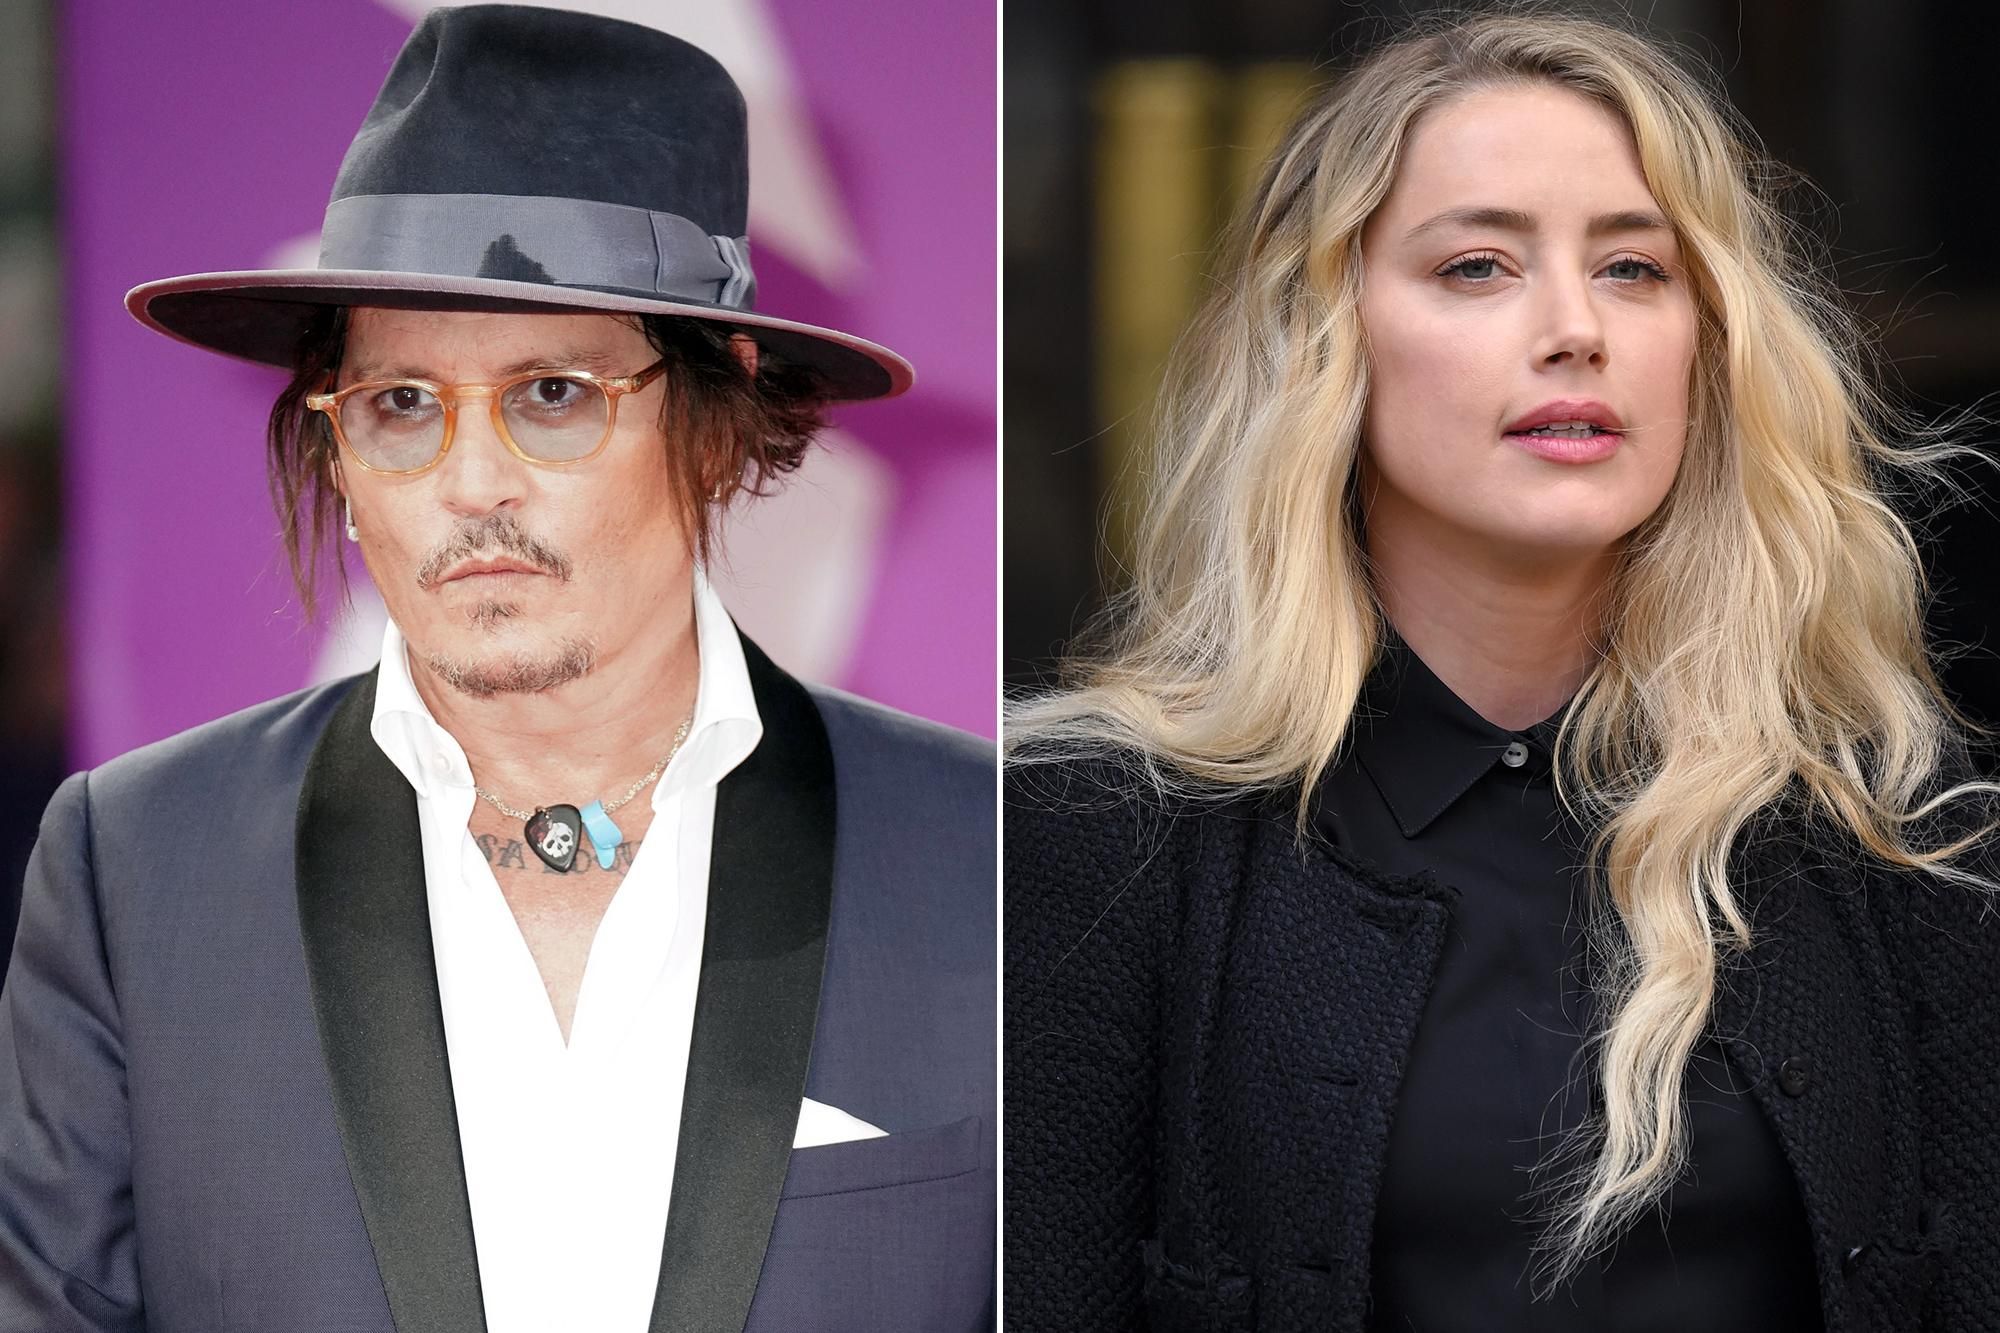 "Джонні проти Ембер": про скандальне розлучення голлівудських акторів знімуть документалку - Кіно